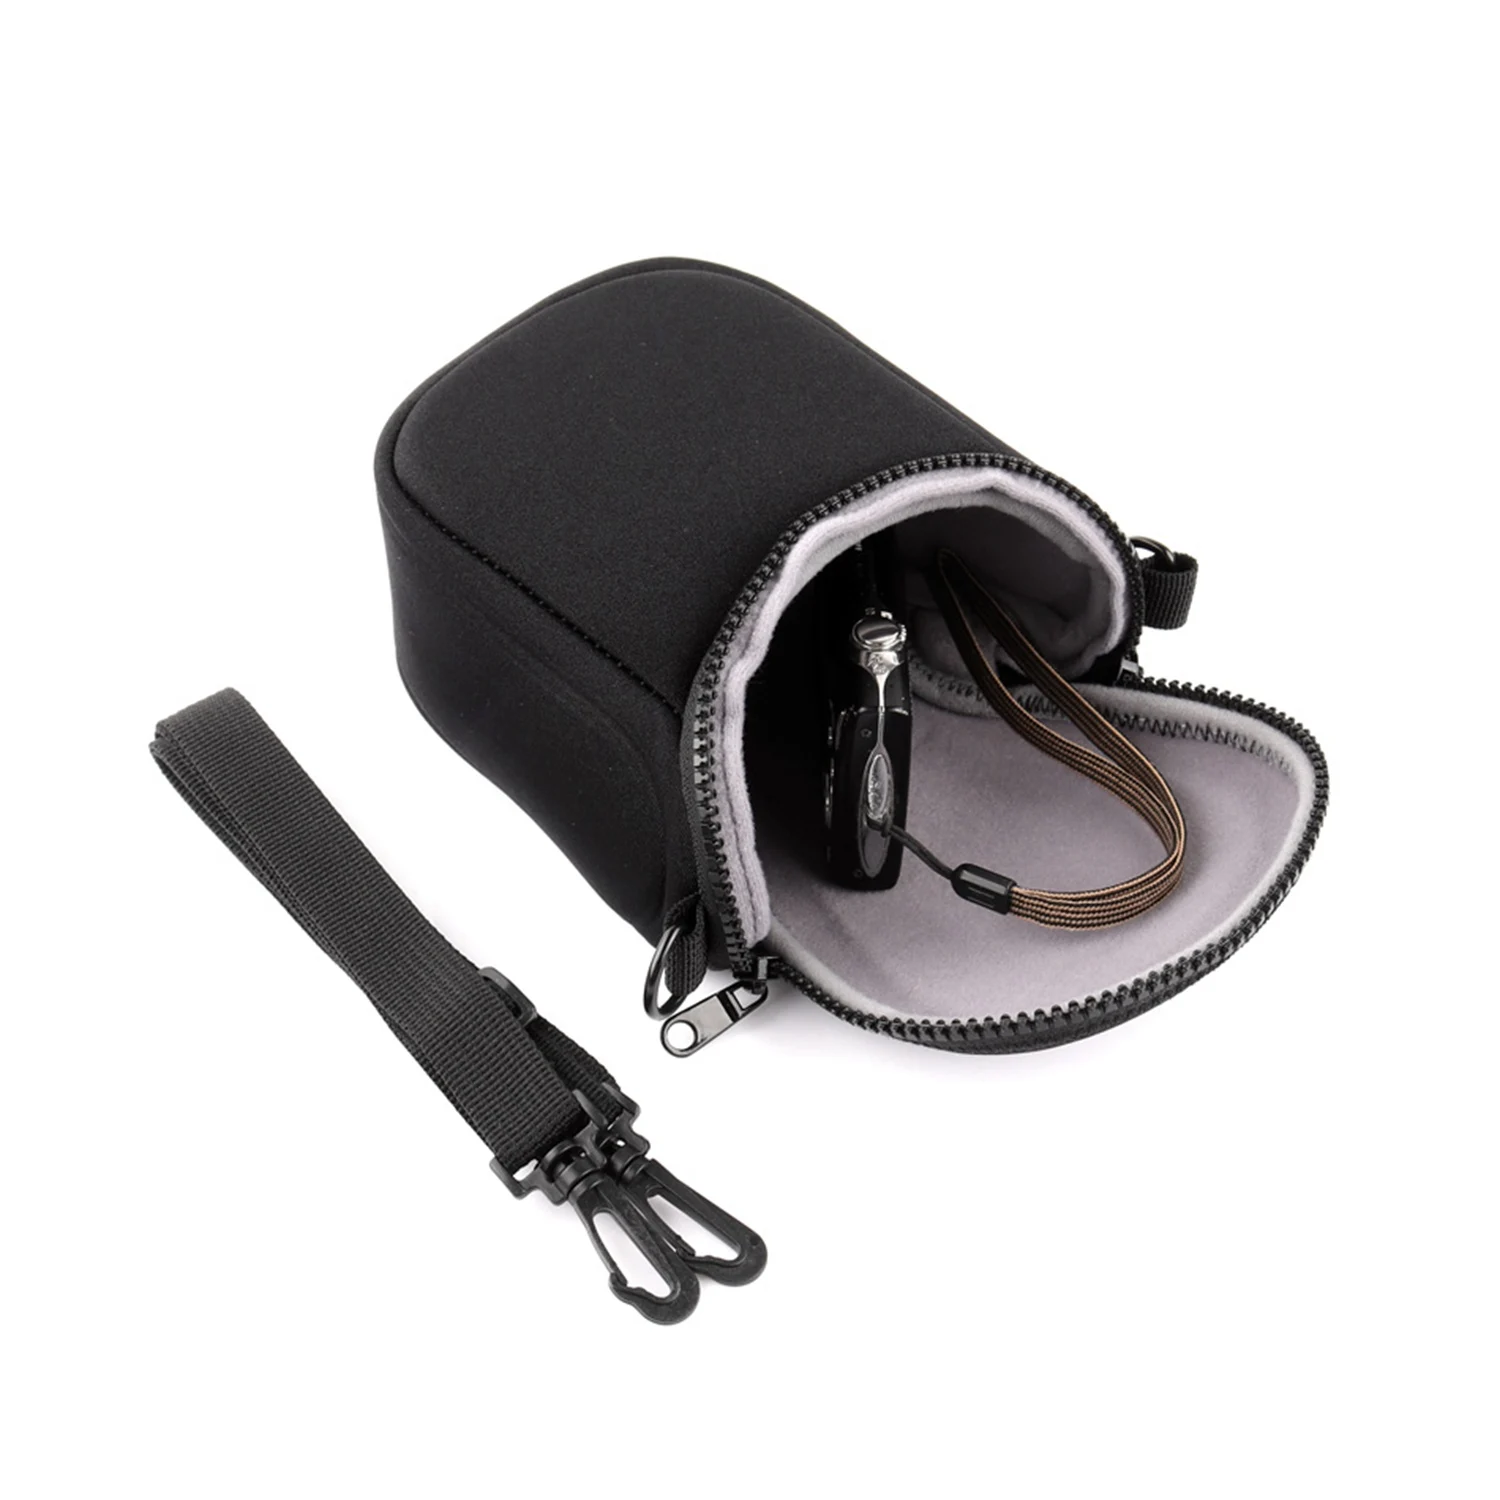 Водонепроницаемый мягкая сумка для камеры чехол с ремешком для цифровой однообъективной зеркальной камеры Canon Eos M100 M50 M10 M6 M5 M3 M2 G1Xiii G1Xii Sx530 Sx540 Sx430 и Панас